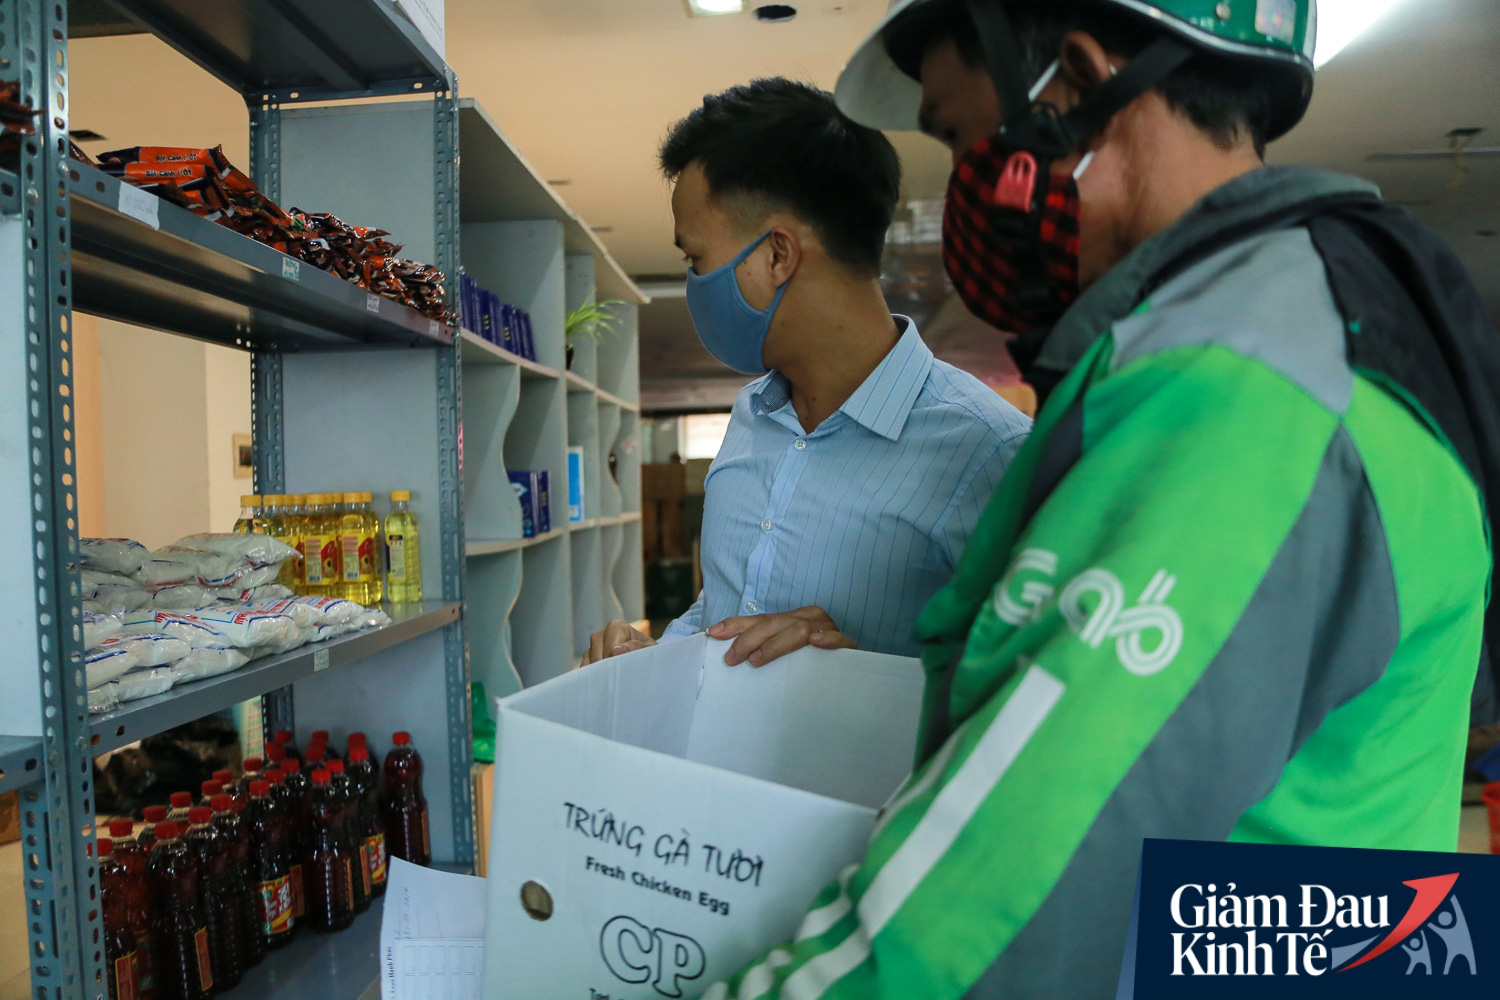 Hàng trăm người dân Hà Nội xếp hàng dài, chờ tới lượt để nhận nhu yếu phẩm tại siêu thị hạnh phúc - Ảnh 6.